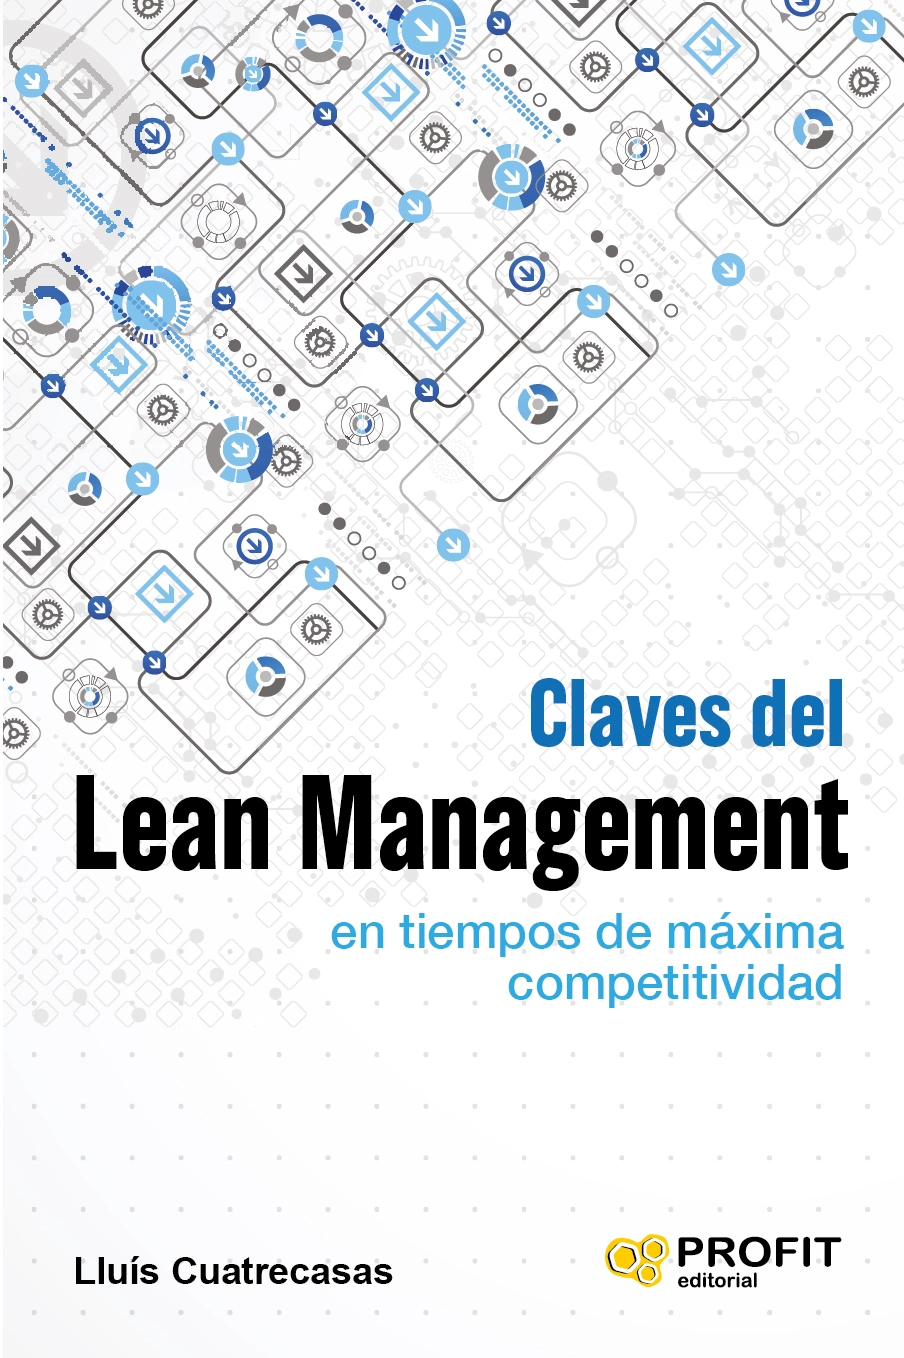 Claves del Lean Management | Lluís Cuatrecasas | Libros de empresa y negocios